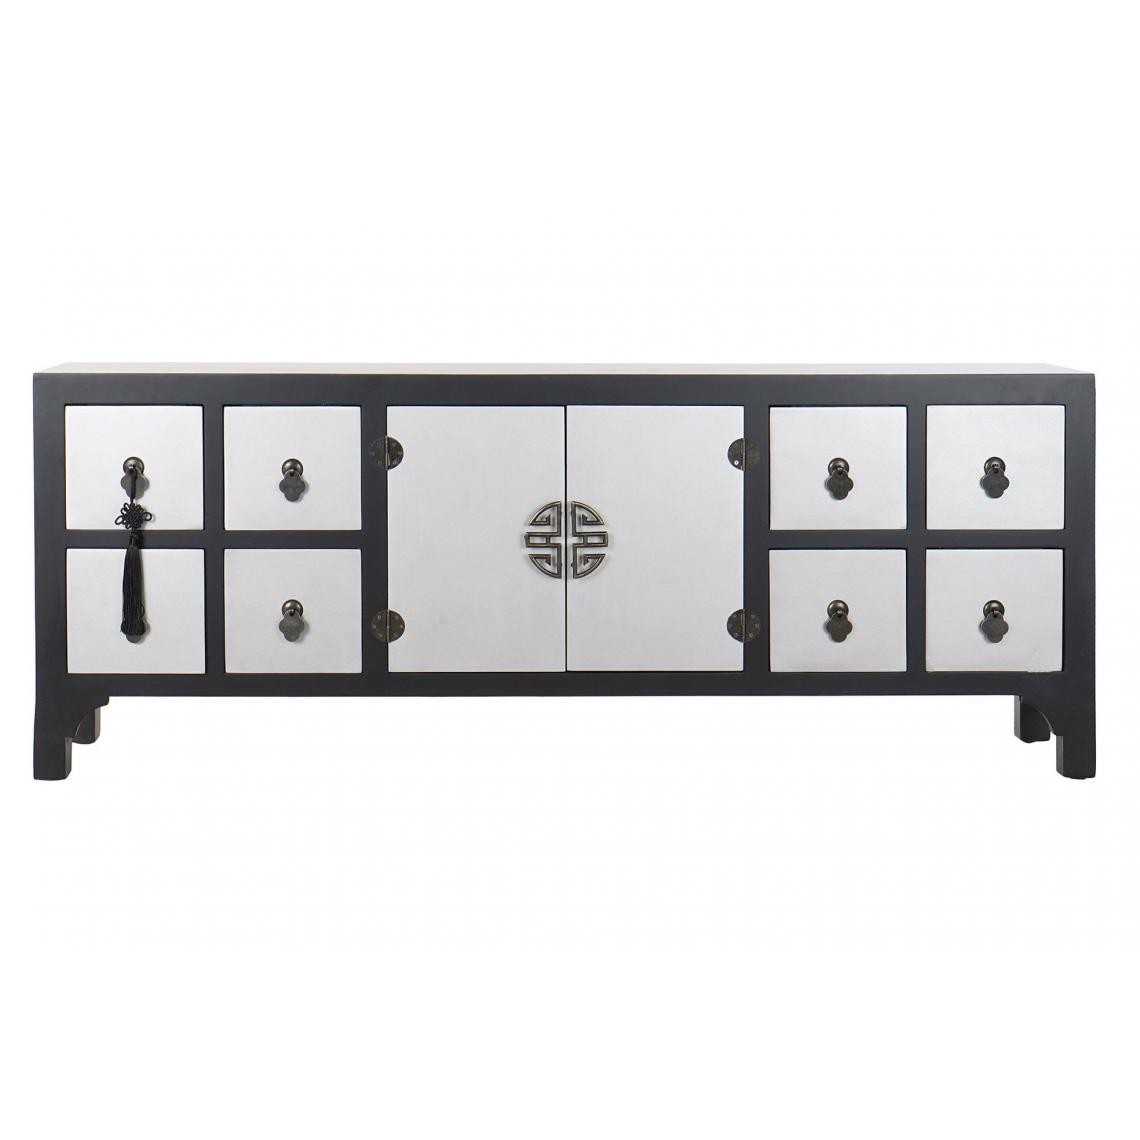 Pegane - Meuble TV en bois noir avec 8 tiroirs et 2 portes - Largeur 130 x Hauteur 51 x Profondeur 24cm - Meubles TV, Hi-Fi